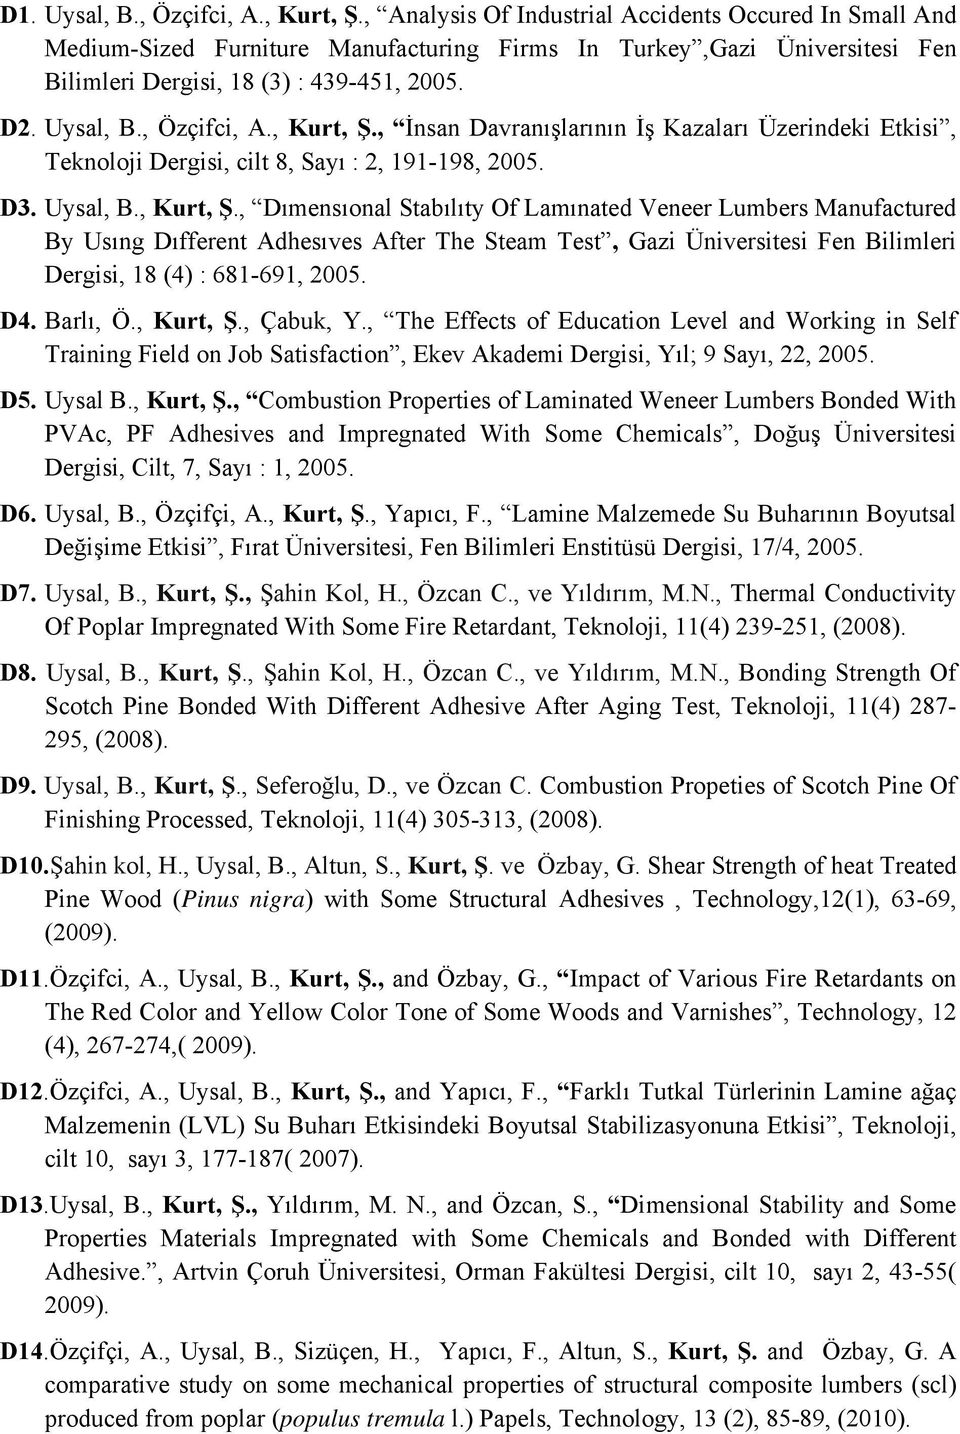 , Kurt, Ş., İnsan Davranışlarının İş Kazaları Üzerindeki Etkisi, Teknoloji Dergisi, cilt 8, Sayı : 2, 191-198, 2005. D3. Uysal, B., Kurt, Ş., Dımensıonal Stabılıty Of Lamınated Veneer Lumbers Manufactured By Usıng Dıfferent Adhesıves After The Steam Test, Gazi Üniversitesi Fen Bilimleri Dergisi, 18 (4) : 681-691, 2005.